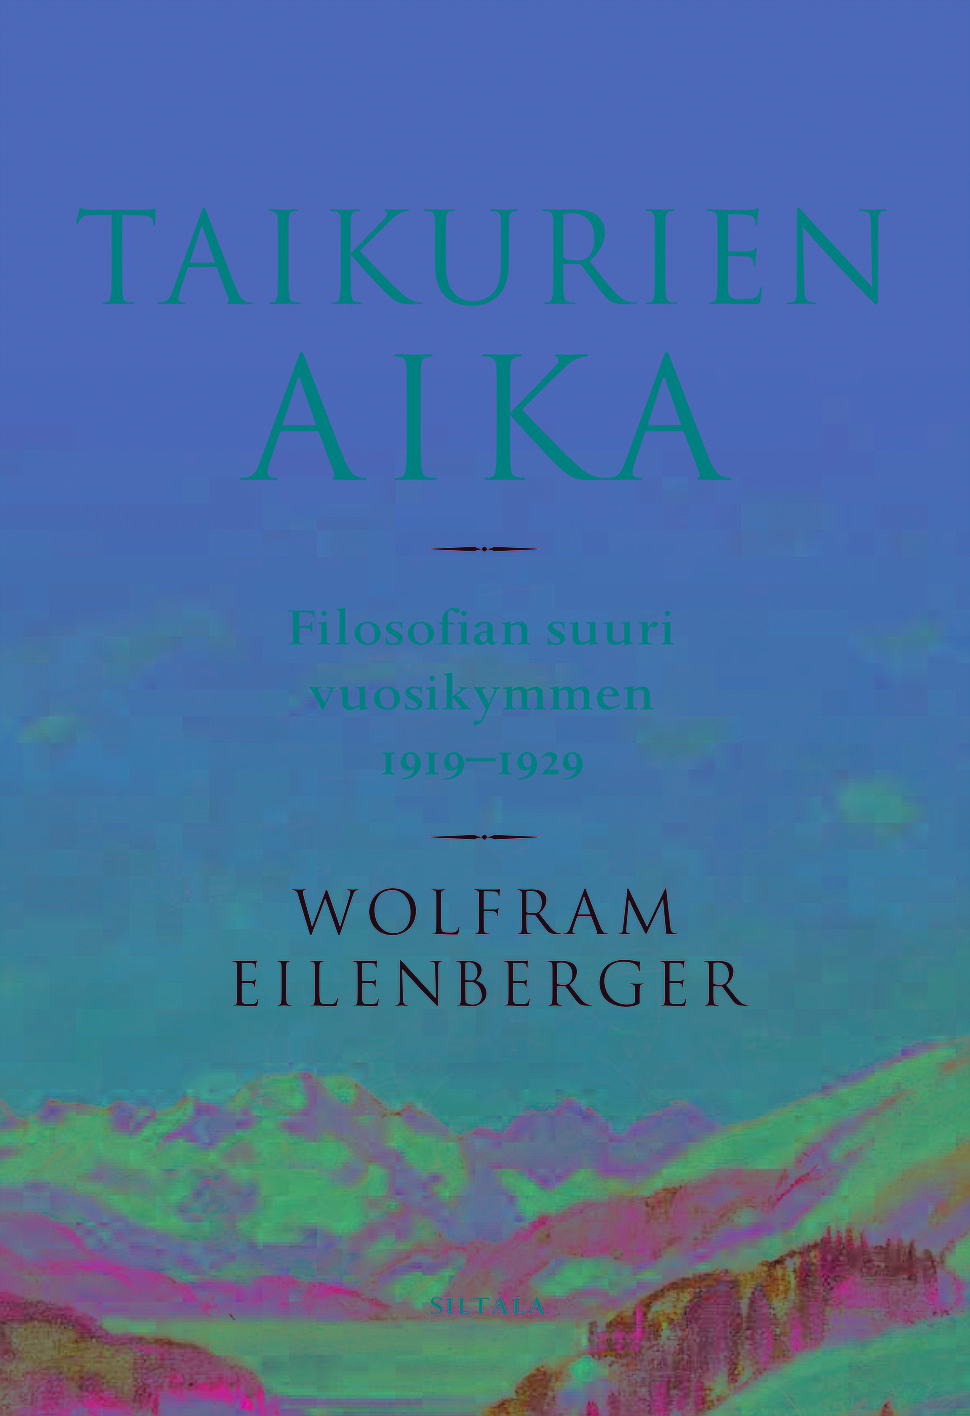 Eilenberger, Wolfram - Taikurien aika: Filosofian suuri vuosikymmen 1919-1929, e-kirja